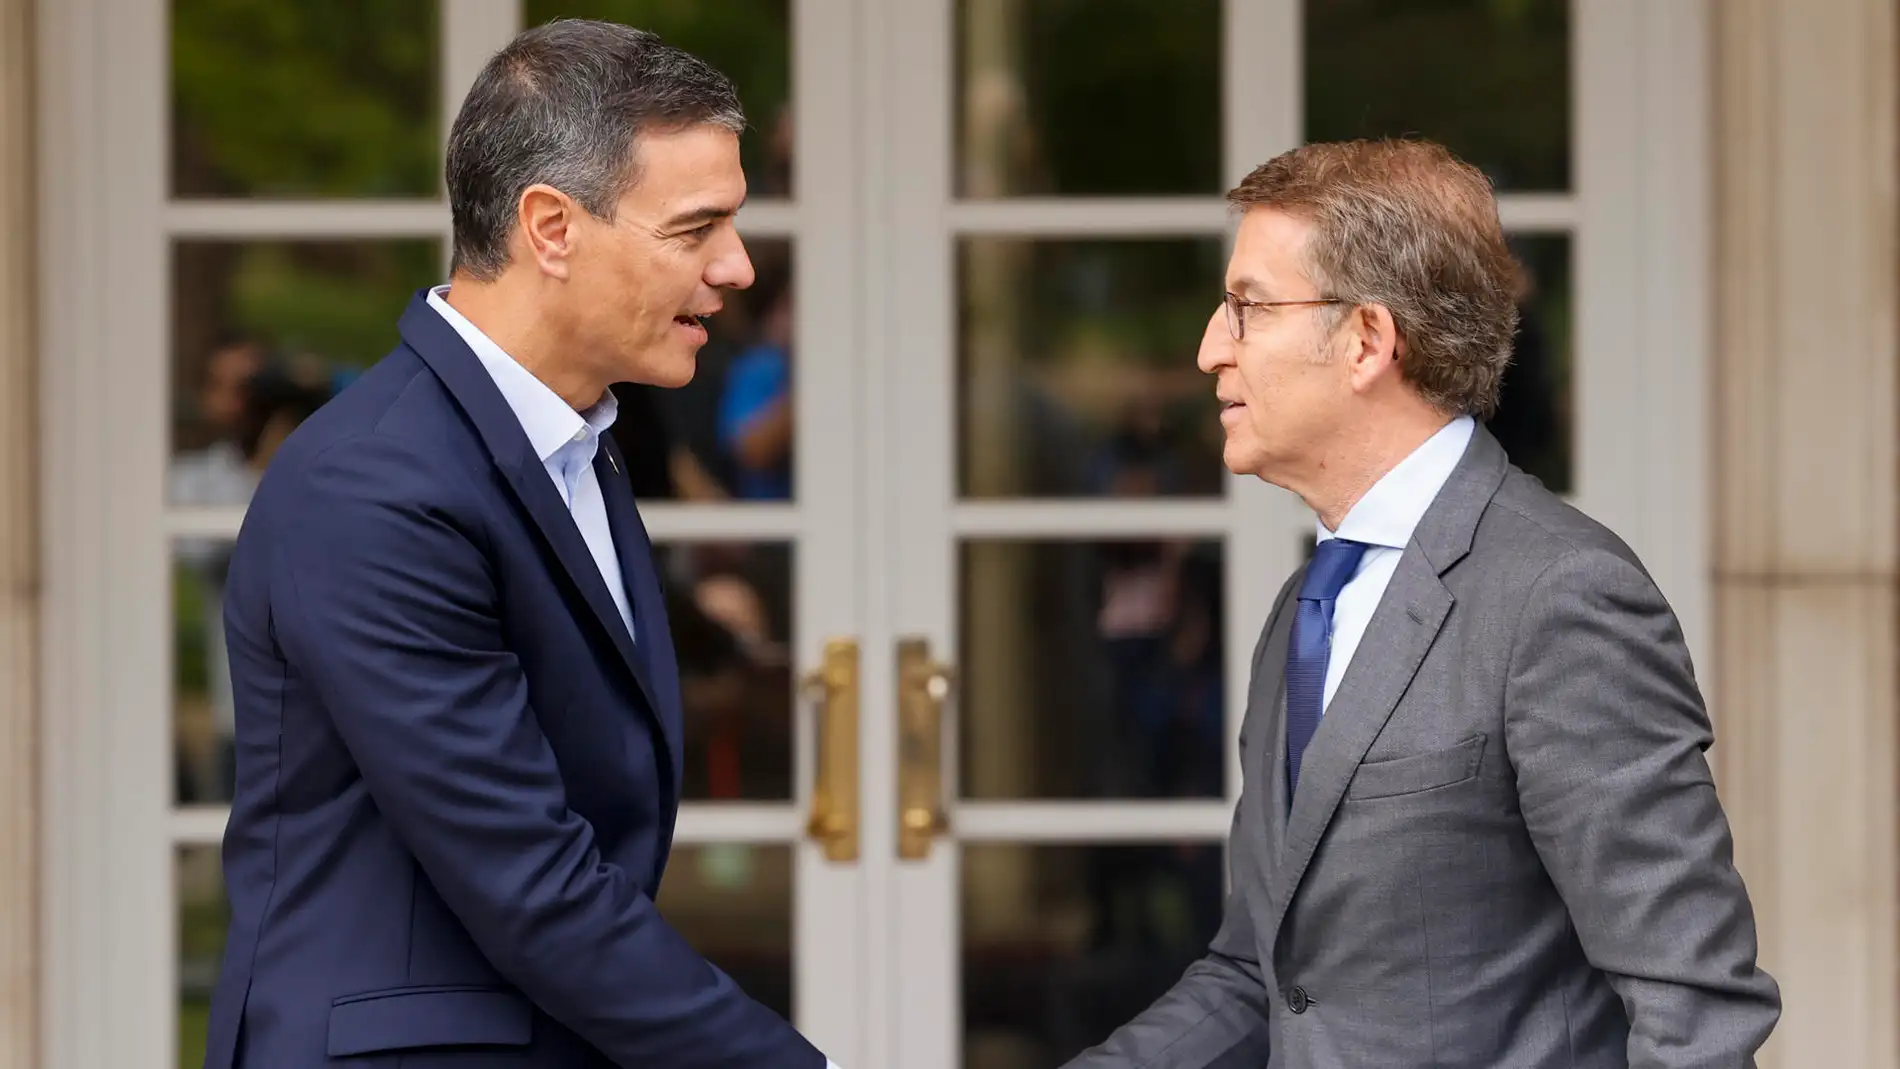 El PP rechaza la reunión en RTVE sobre el cara a cara con Sánchez porque la negociación es "entre partidos"